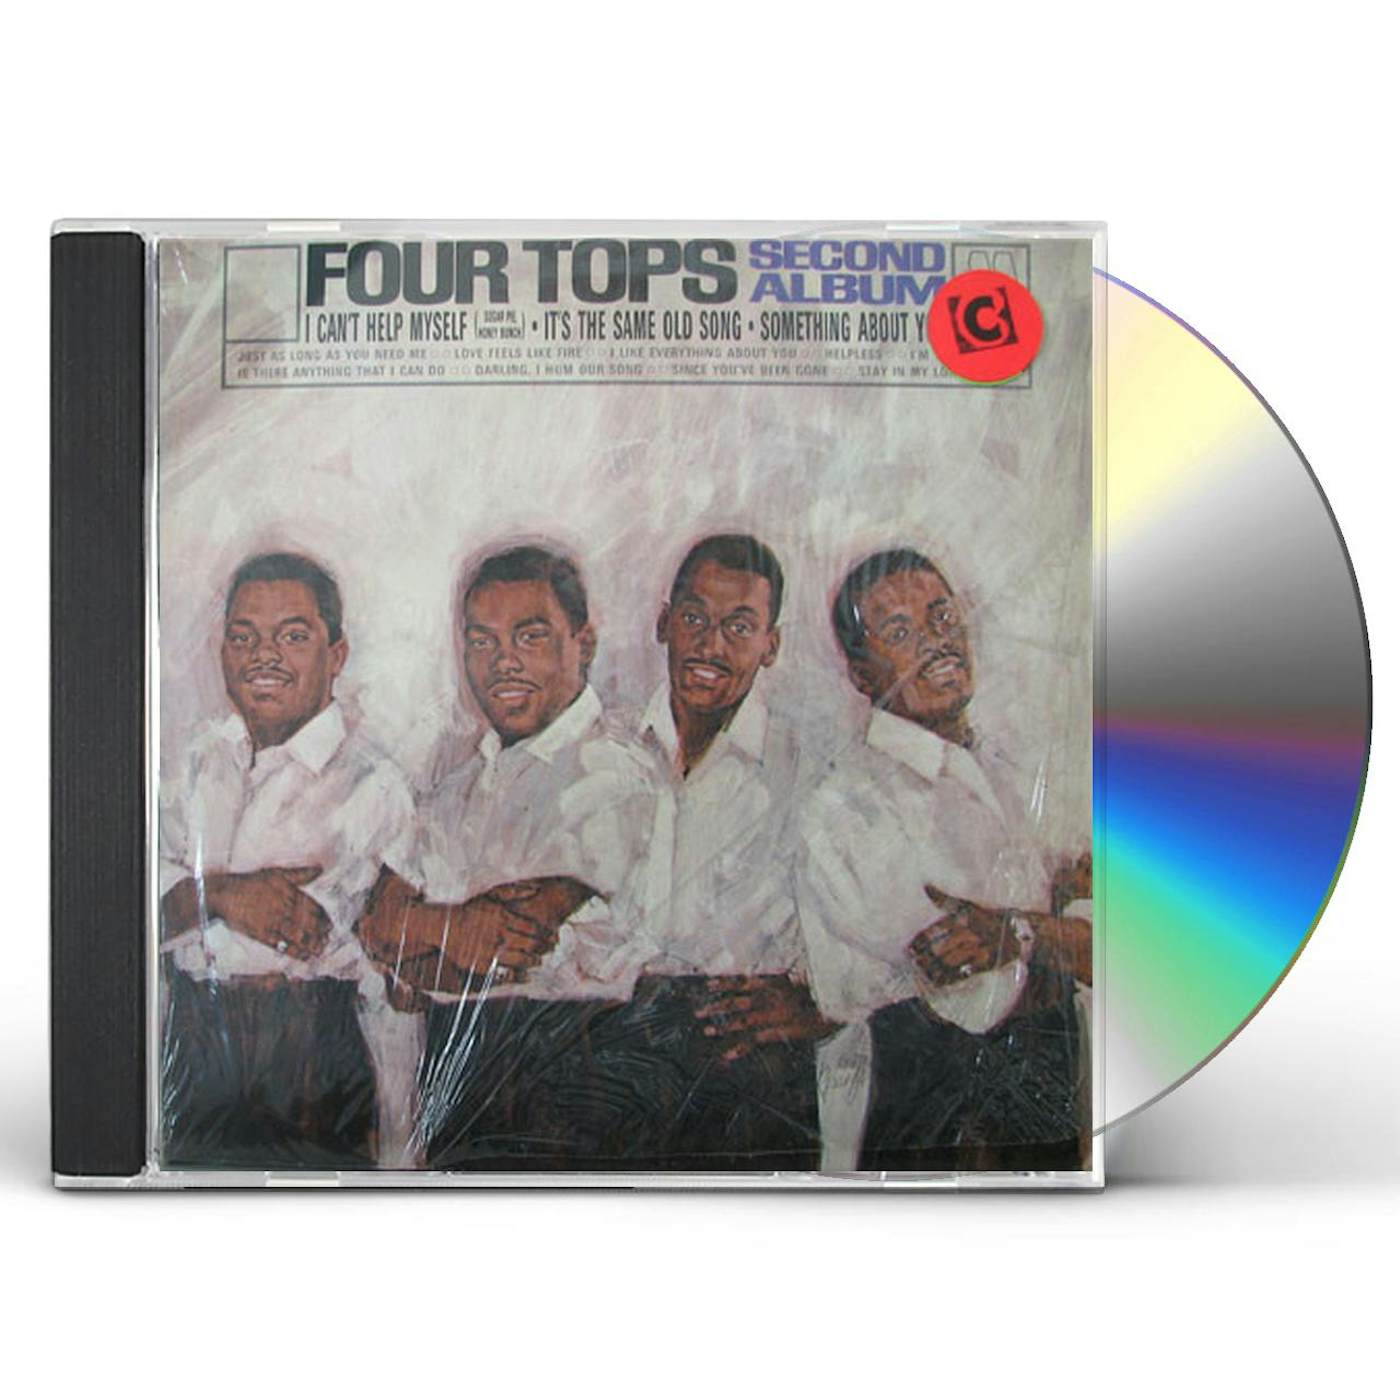 Four Tops FIRST ALBUM SECOND ALBUM CD